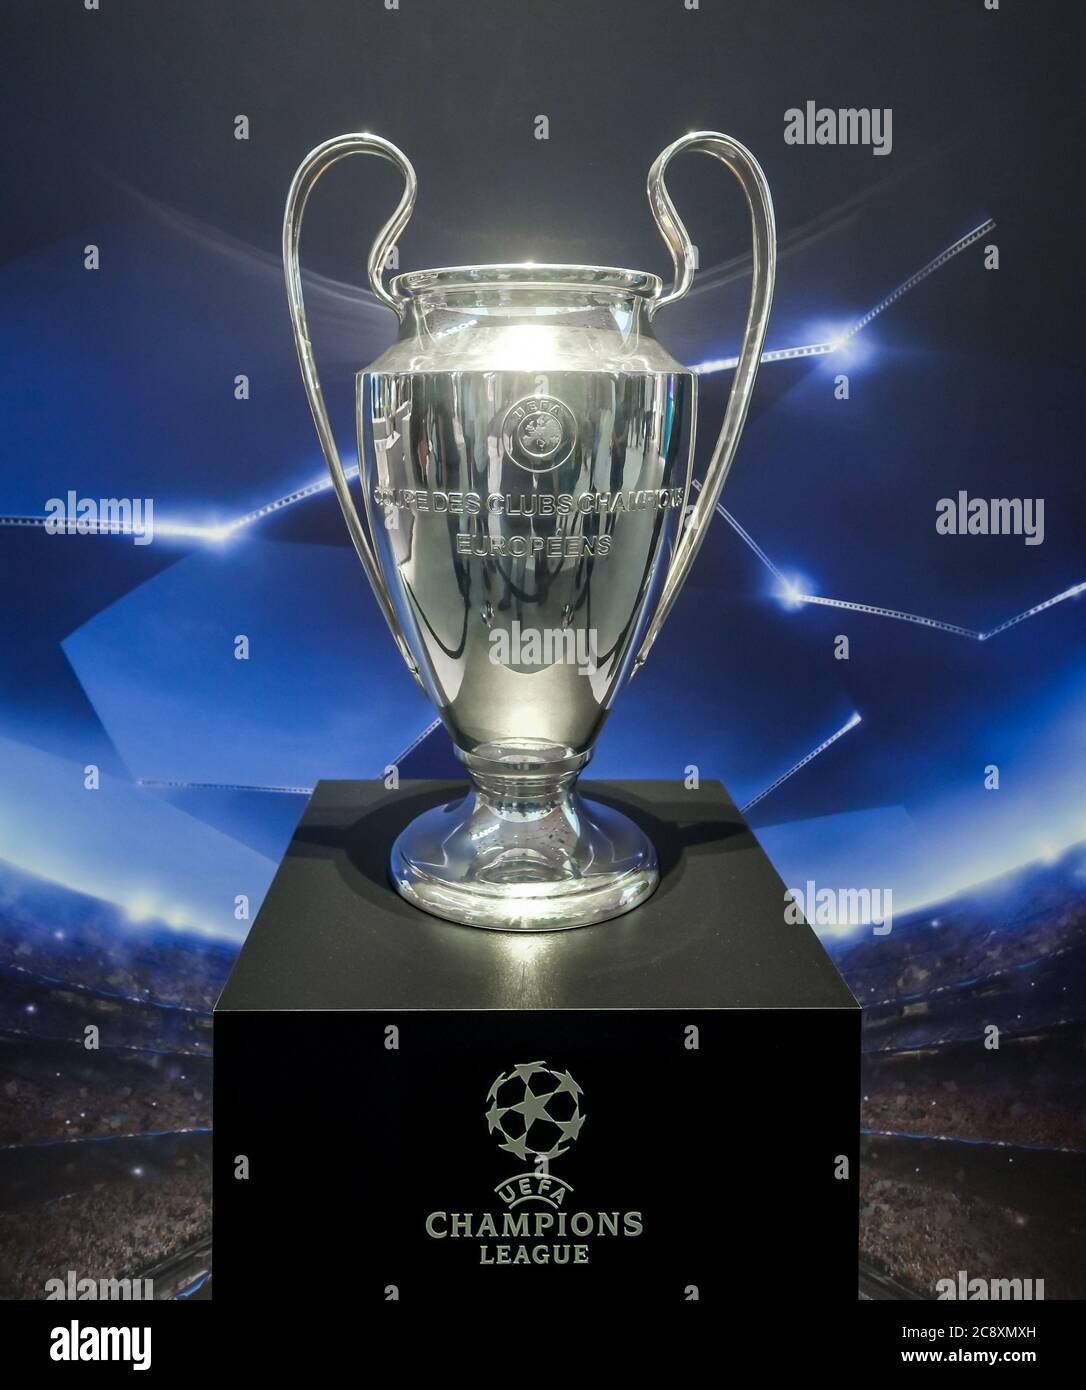 Ligue Des Champions UEFA Champions League trophy Stock Photo - Alamy